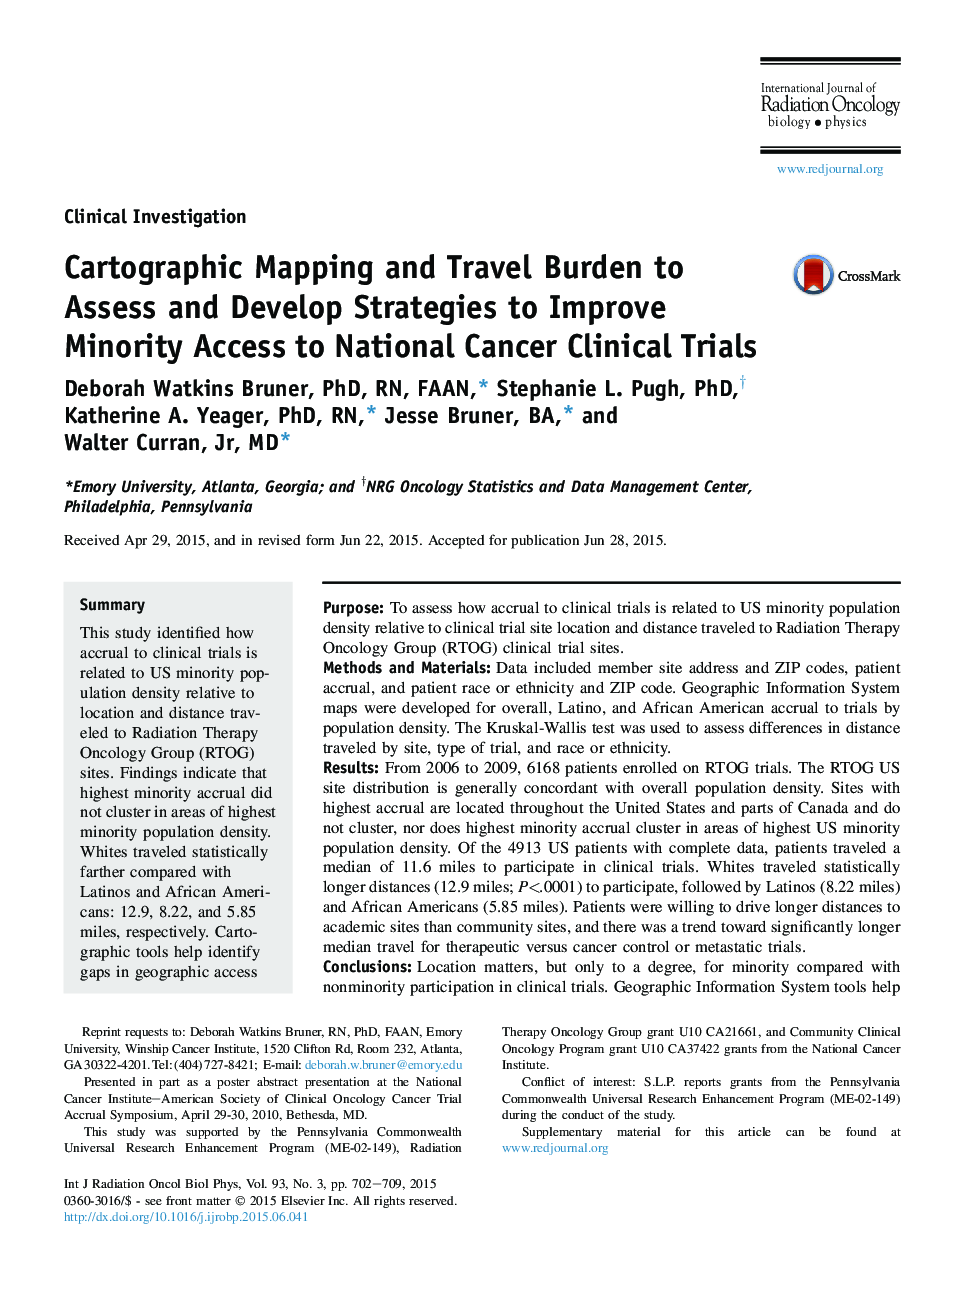 نقشه برداری کارتوگرافی و هزینه سفر برای ارزیابی و توسعه راهبردهای بهبود دسترسی اقلیت ها به محاکمات بالینی سرطان ملی 